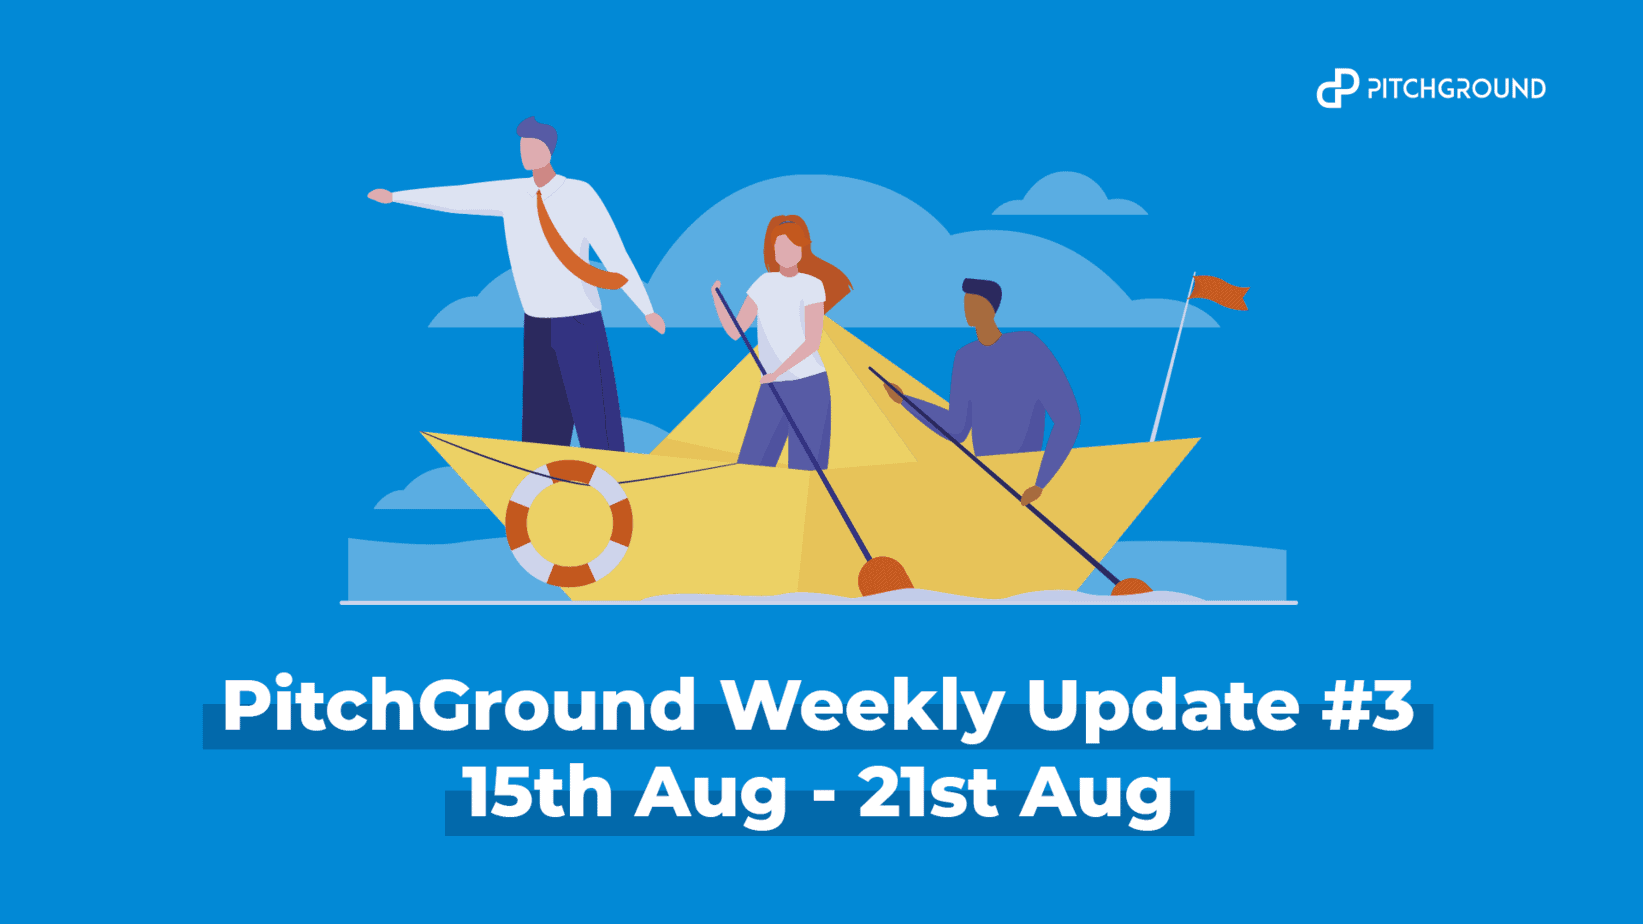 Pitchground weekly update